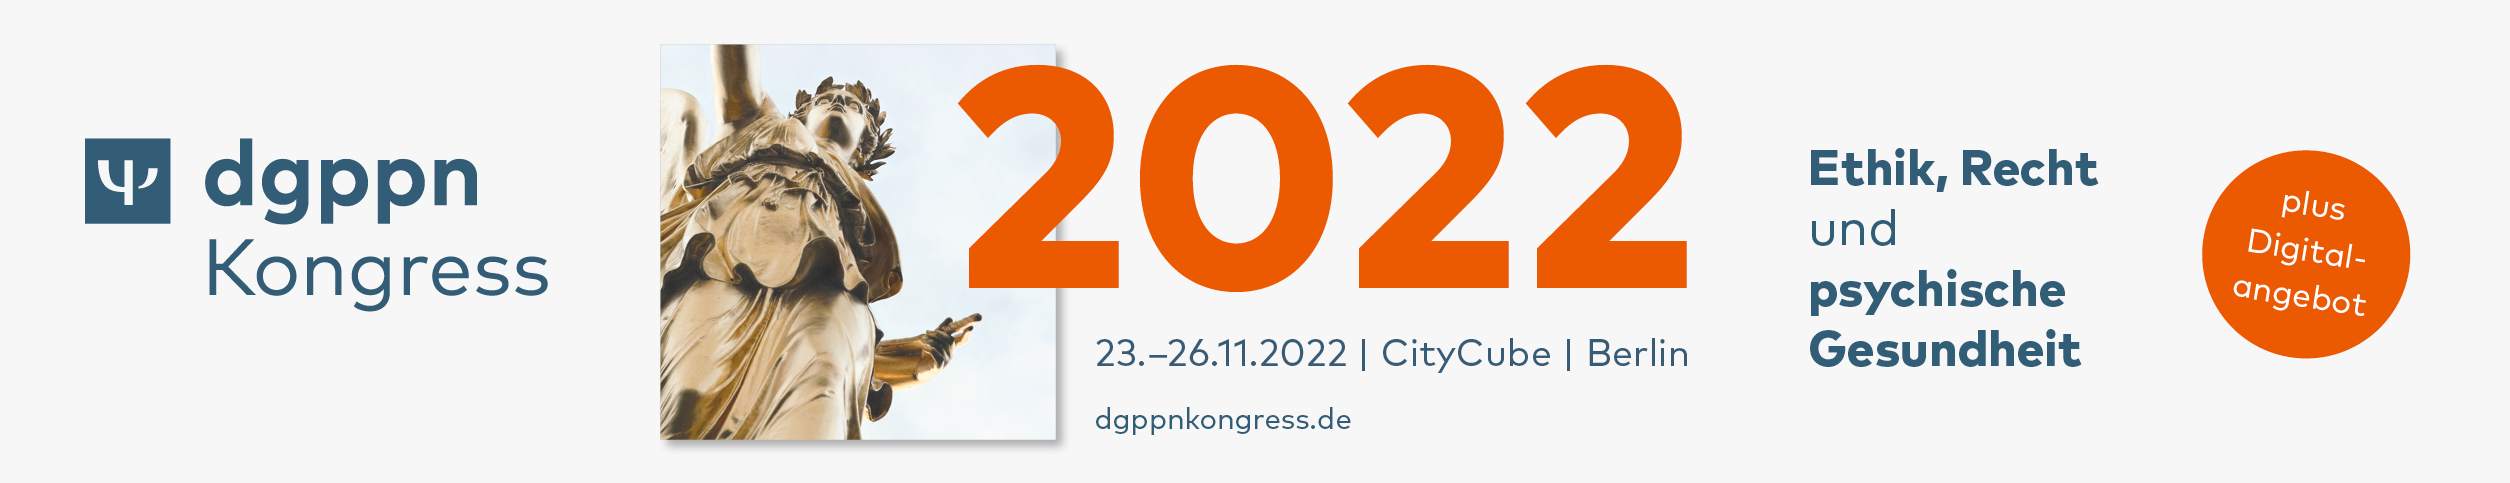 20220125_DGPPN_Kongress_2022_Werbebanner_DE